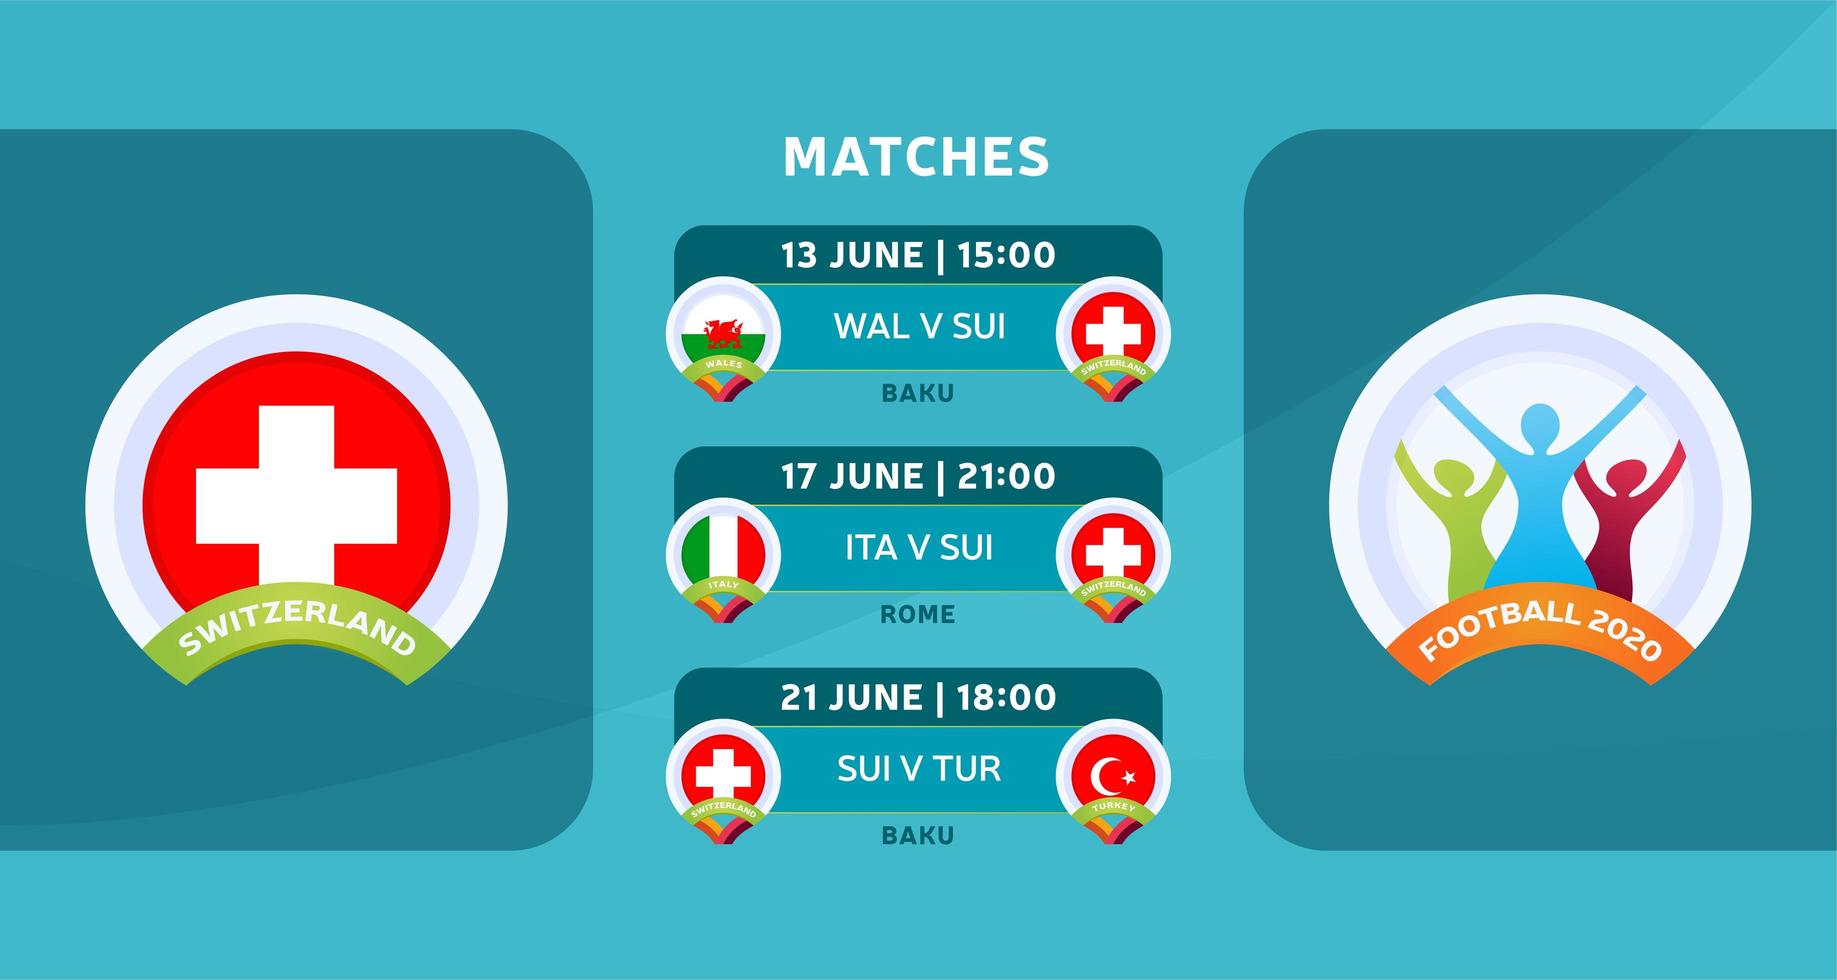 schema över matcher i Schweiz landslaget i slutskedet vid det europeiska fotbollsmästerskapet 2020. vektorillustration med den officiella grusen av fotbollsmatcher. vektor